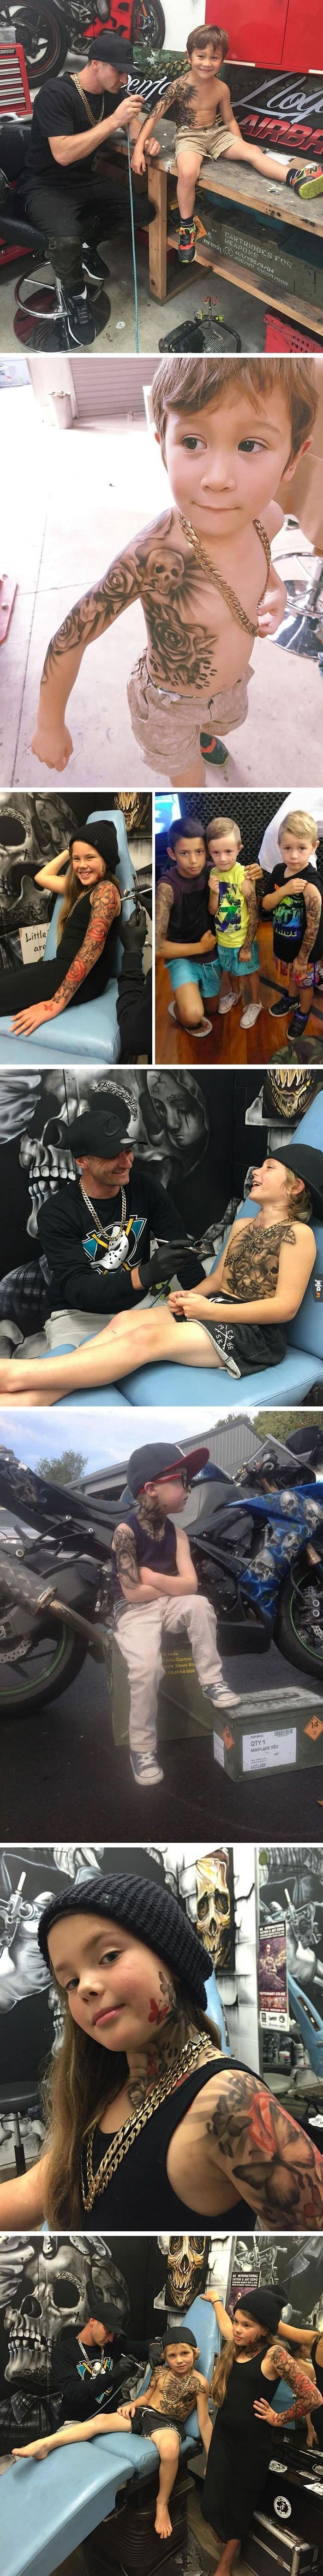 Artysta namalował chorym dzieciom tymczasowe tatuaże